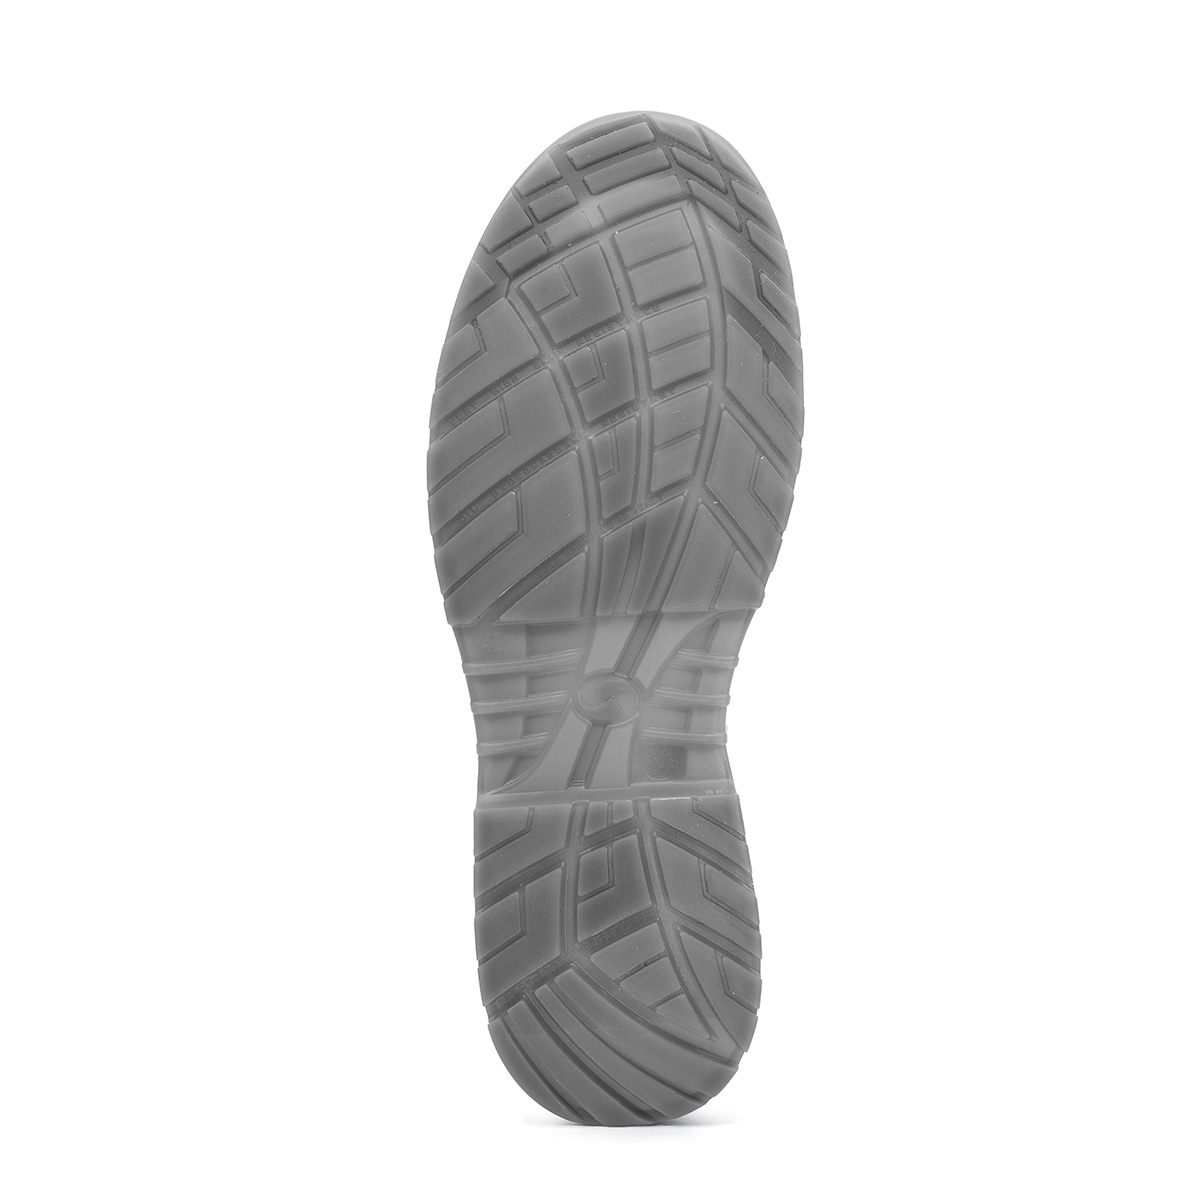 Crystal BERGAMO - Ankle boot 86206-00 Peak - protezione modello Safety di Shoes Sixton Codice classe con SRC S2